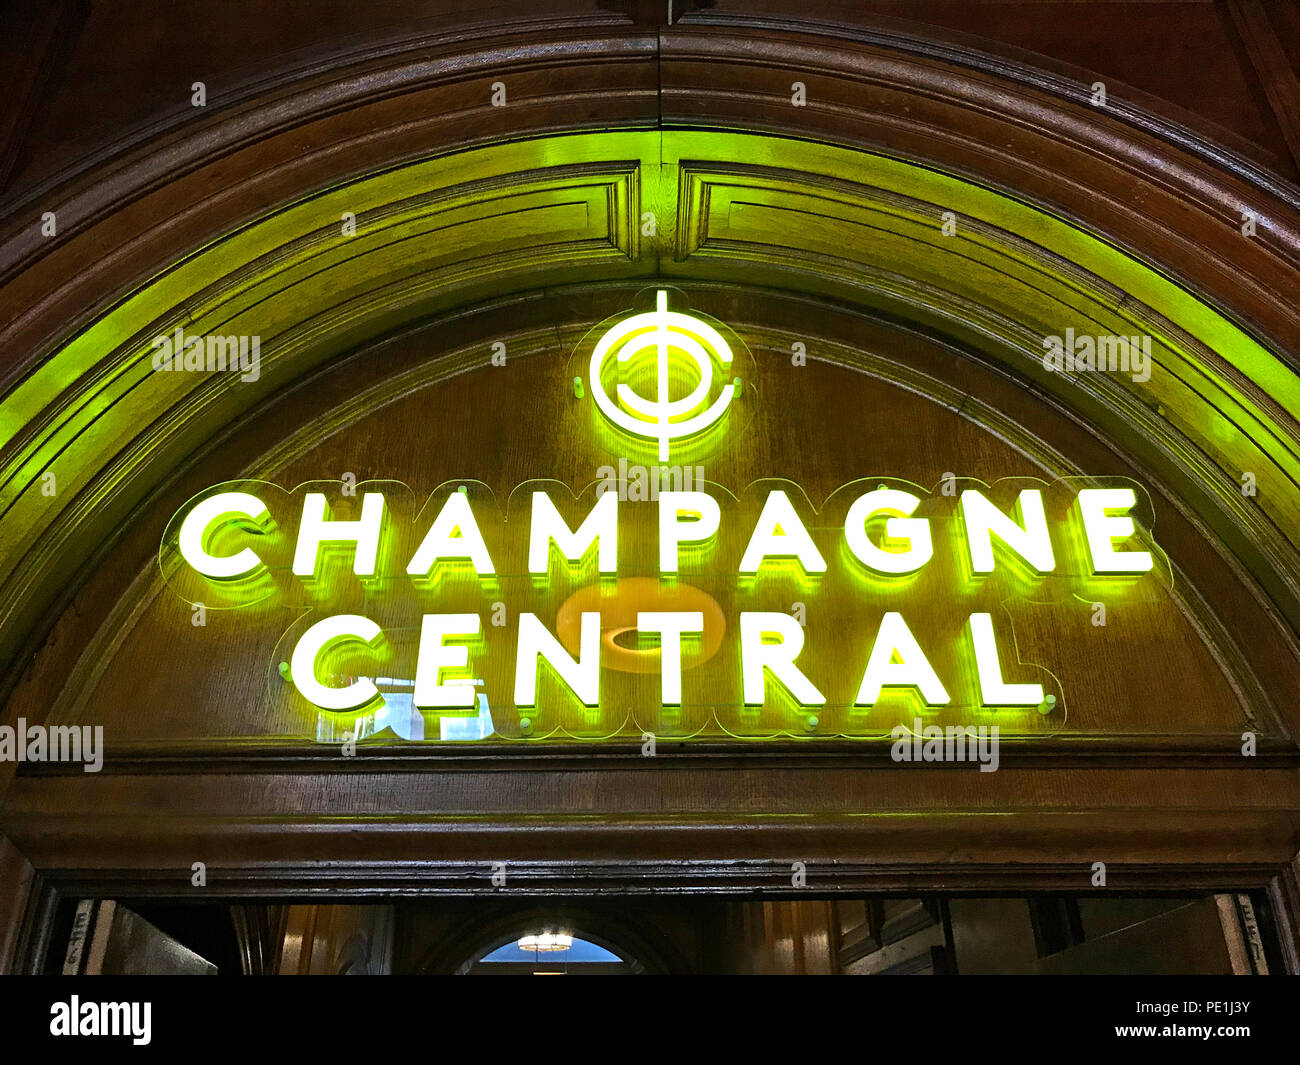 La gare centrale de champagne,Central, Glasgow, Gordon St, la rue Gordon, Ecosse,pub,bar Banque D'Images